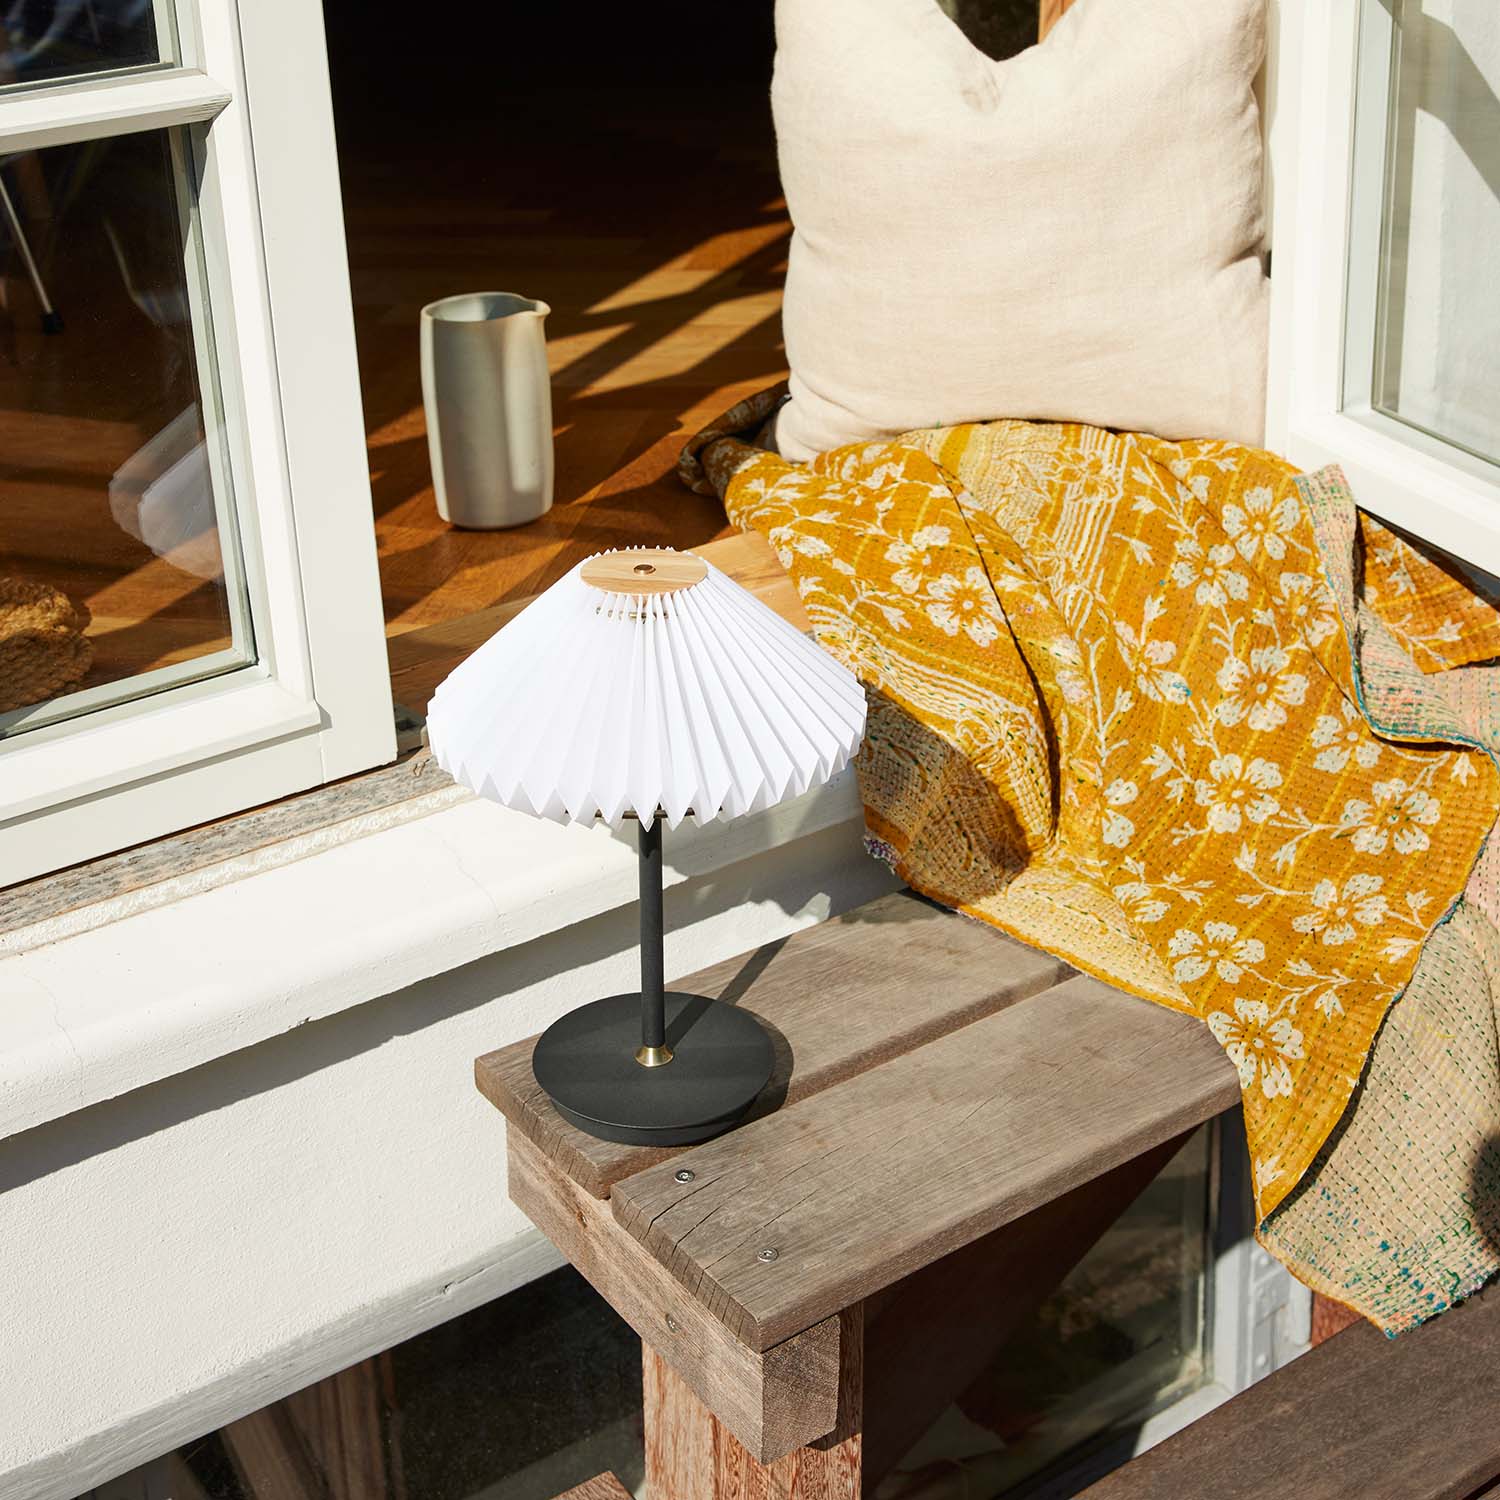 PARIS TO GO - Lampe de table nomade design sans-fil